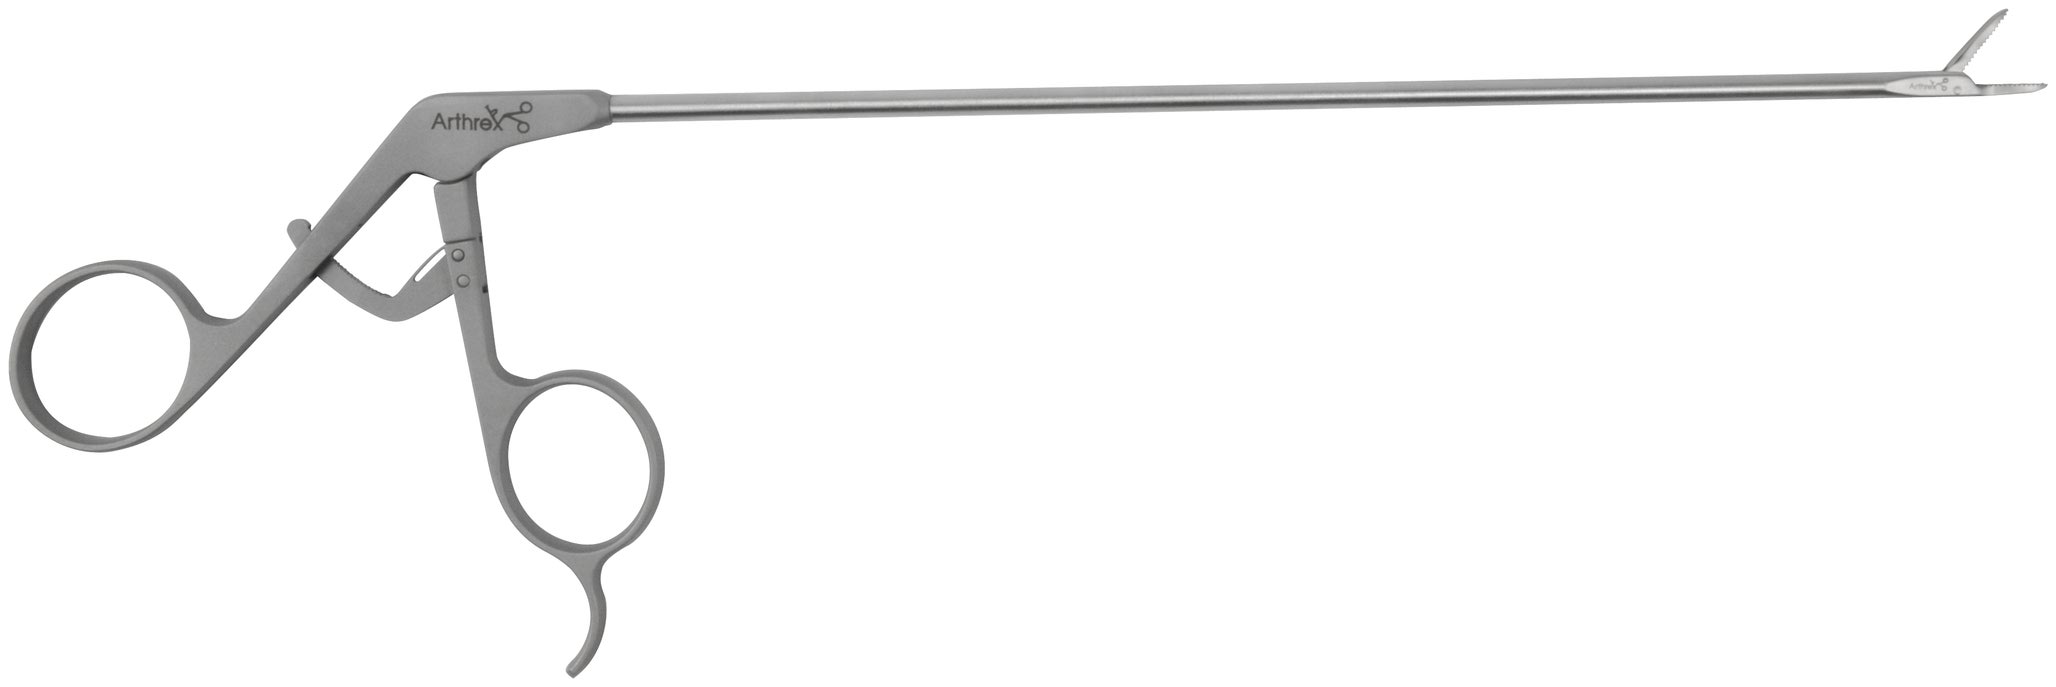 Arthrex - FiberWire Grasper, 220 mm w/SR Handle - AR-16975SR